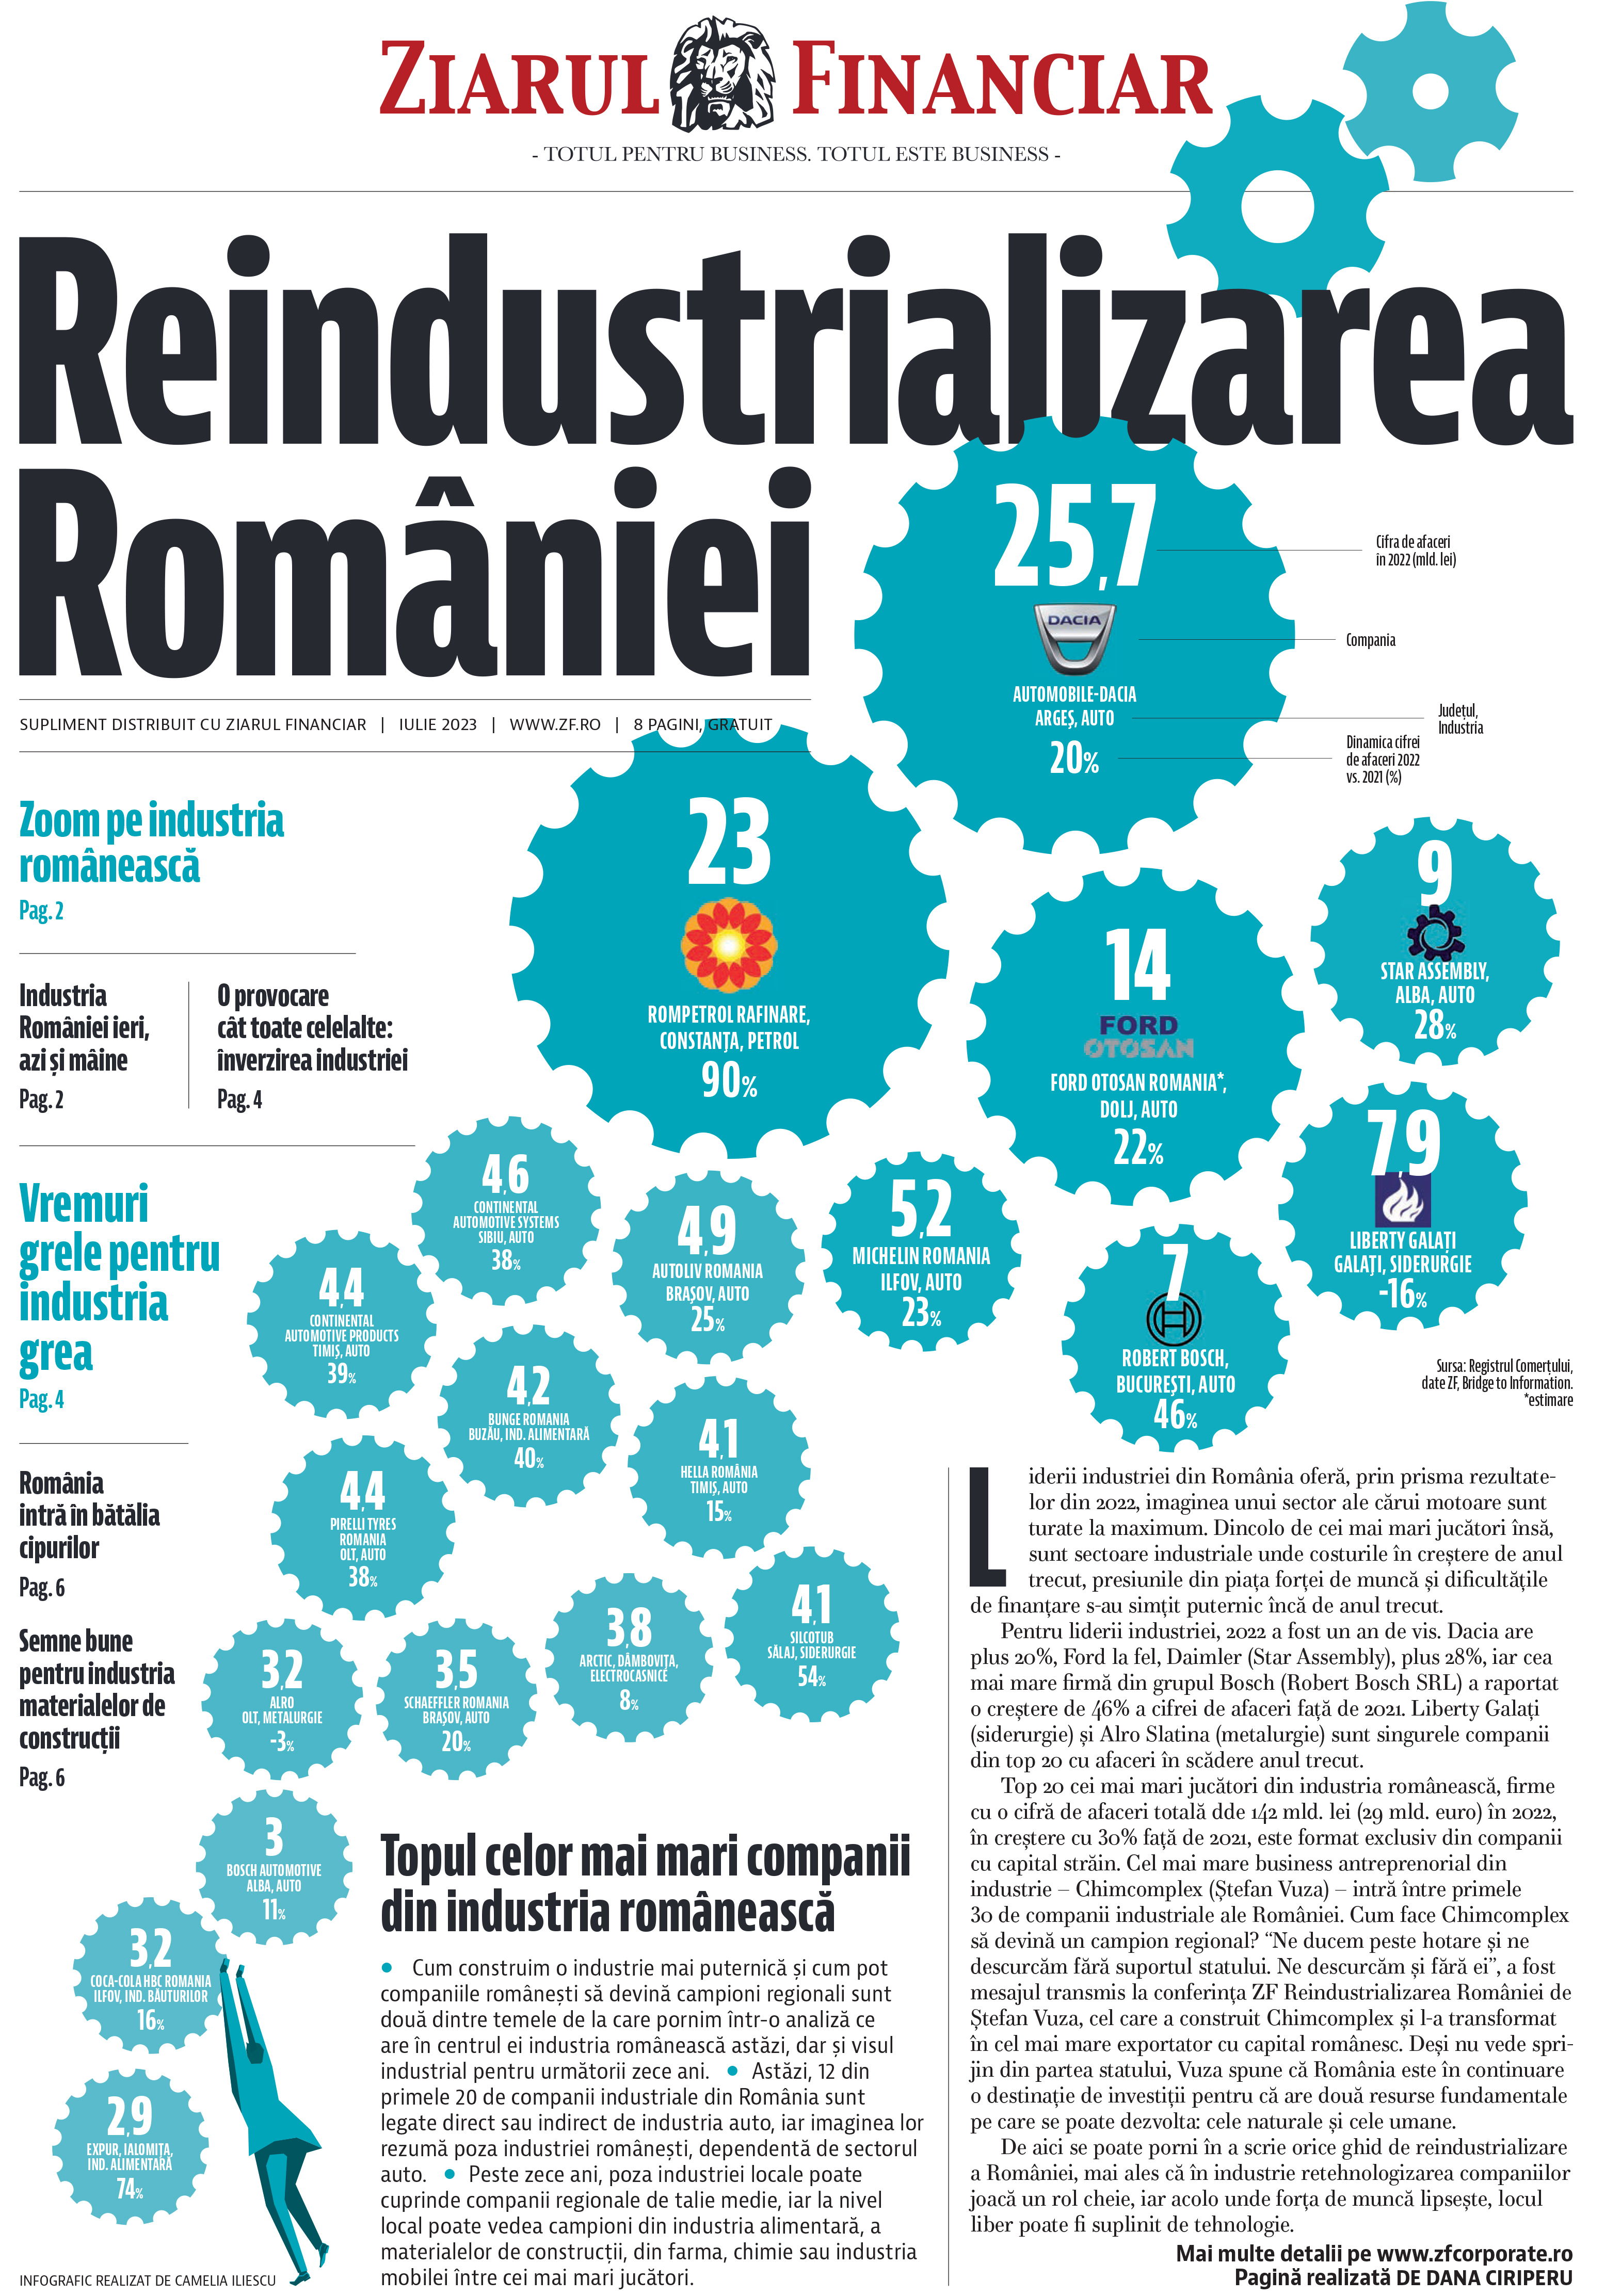 Topul celor mai mari companii din industria românească